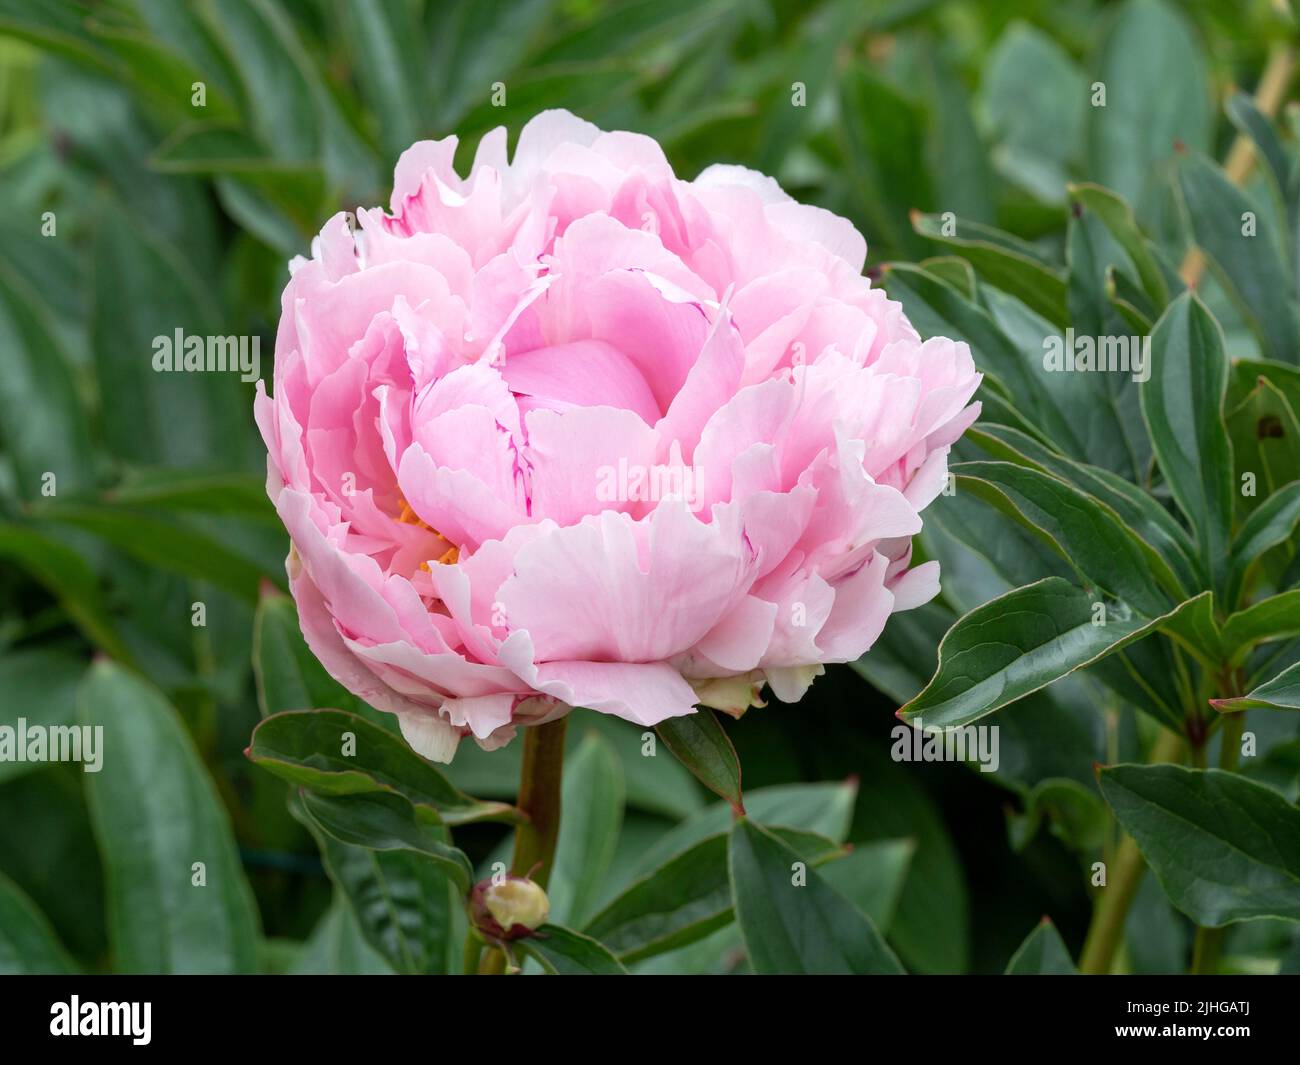 Hermoso plato llano de variedad de flor de peonía rosa Foto de stock